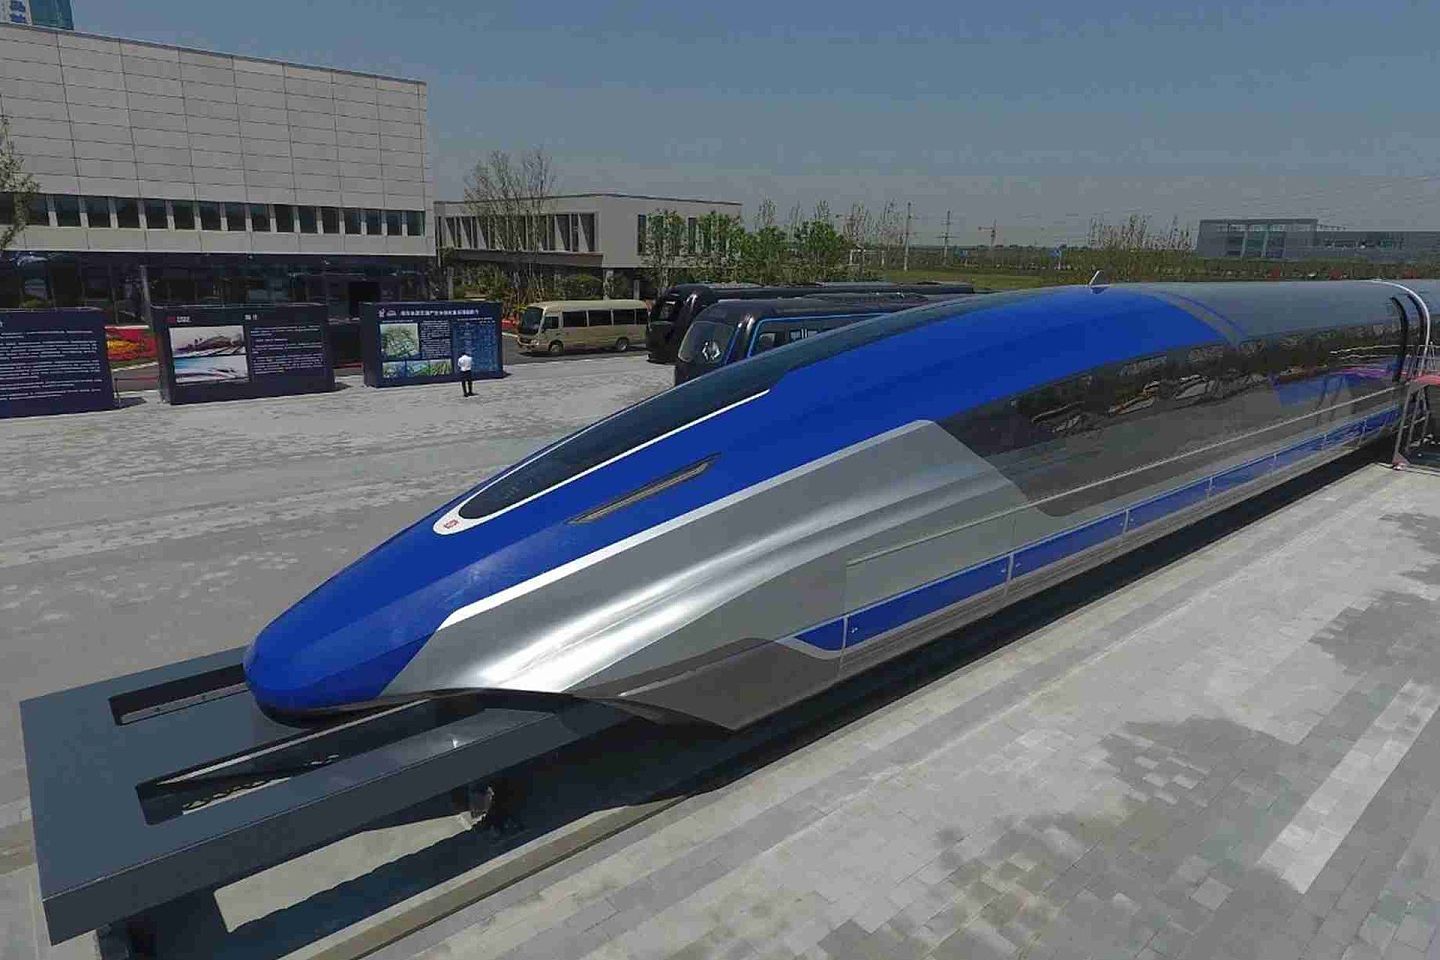 高速磁悬浮列车可以填补高铁和航空运输之间的速度空白。（微博@传媒老贾 ）